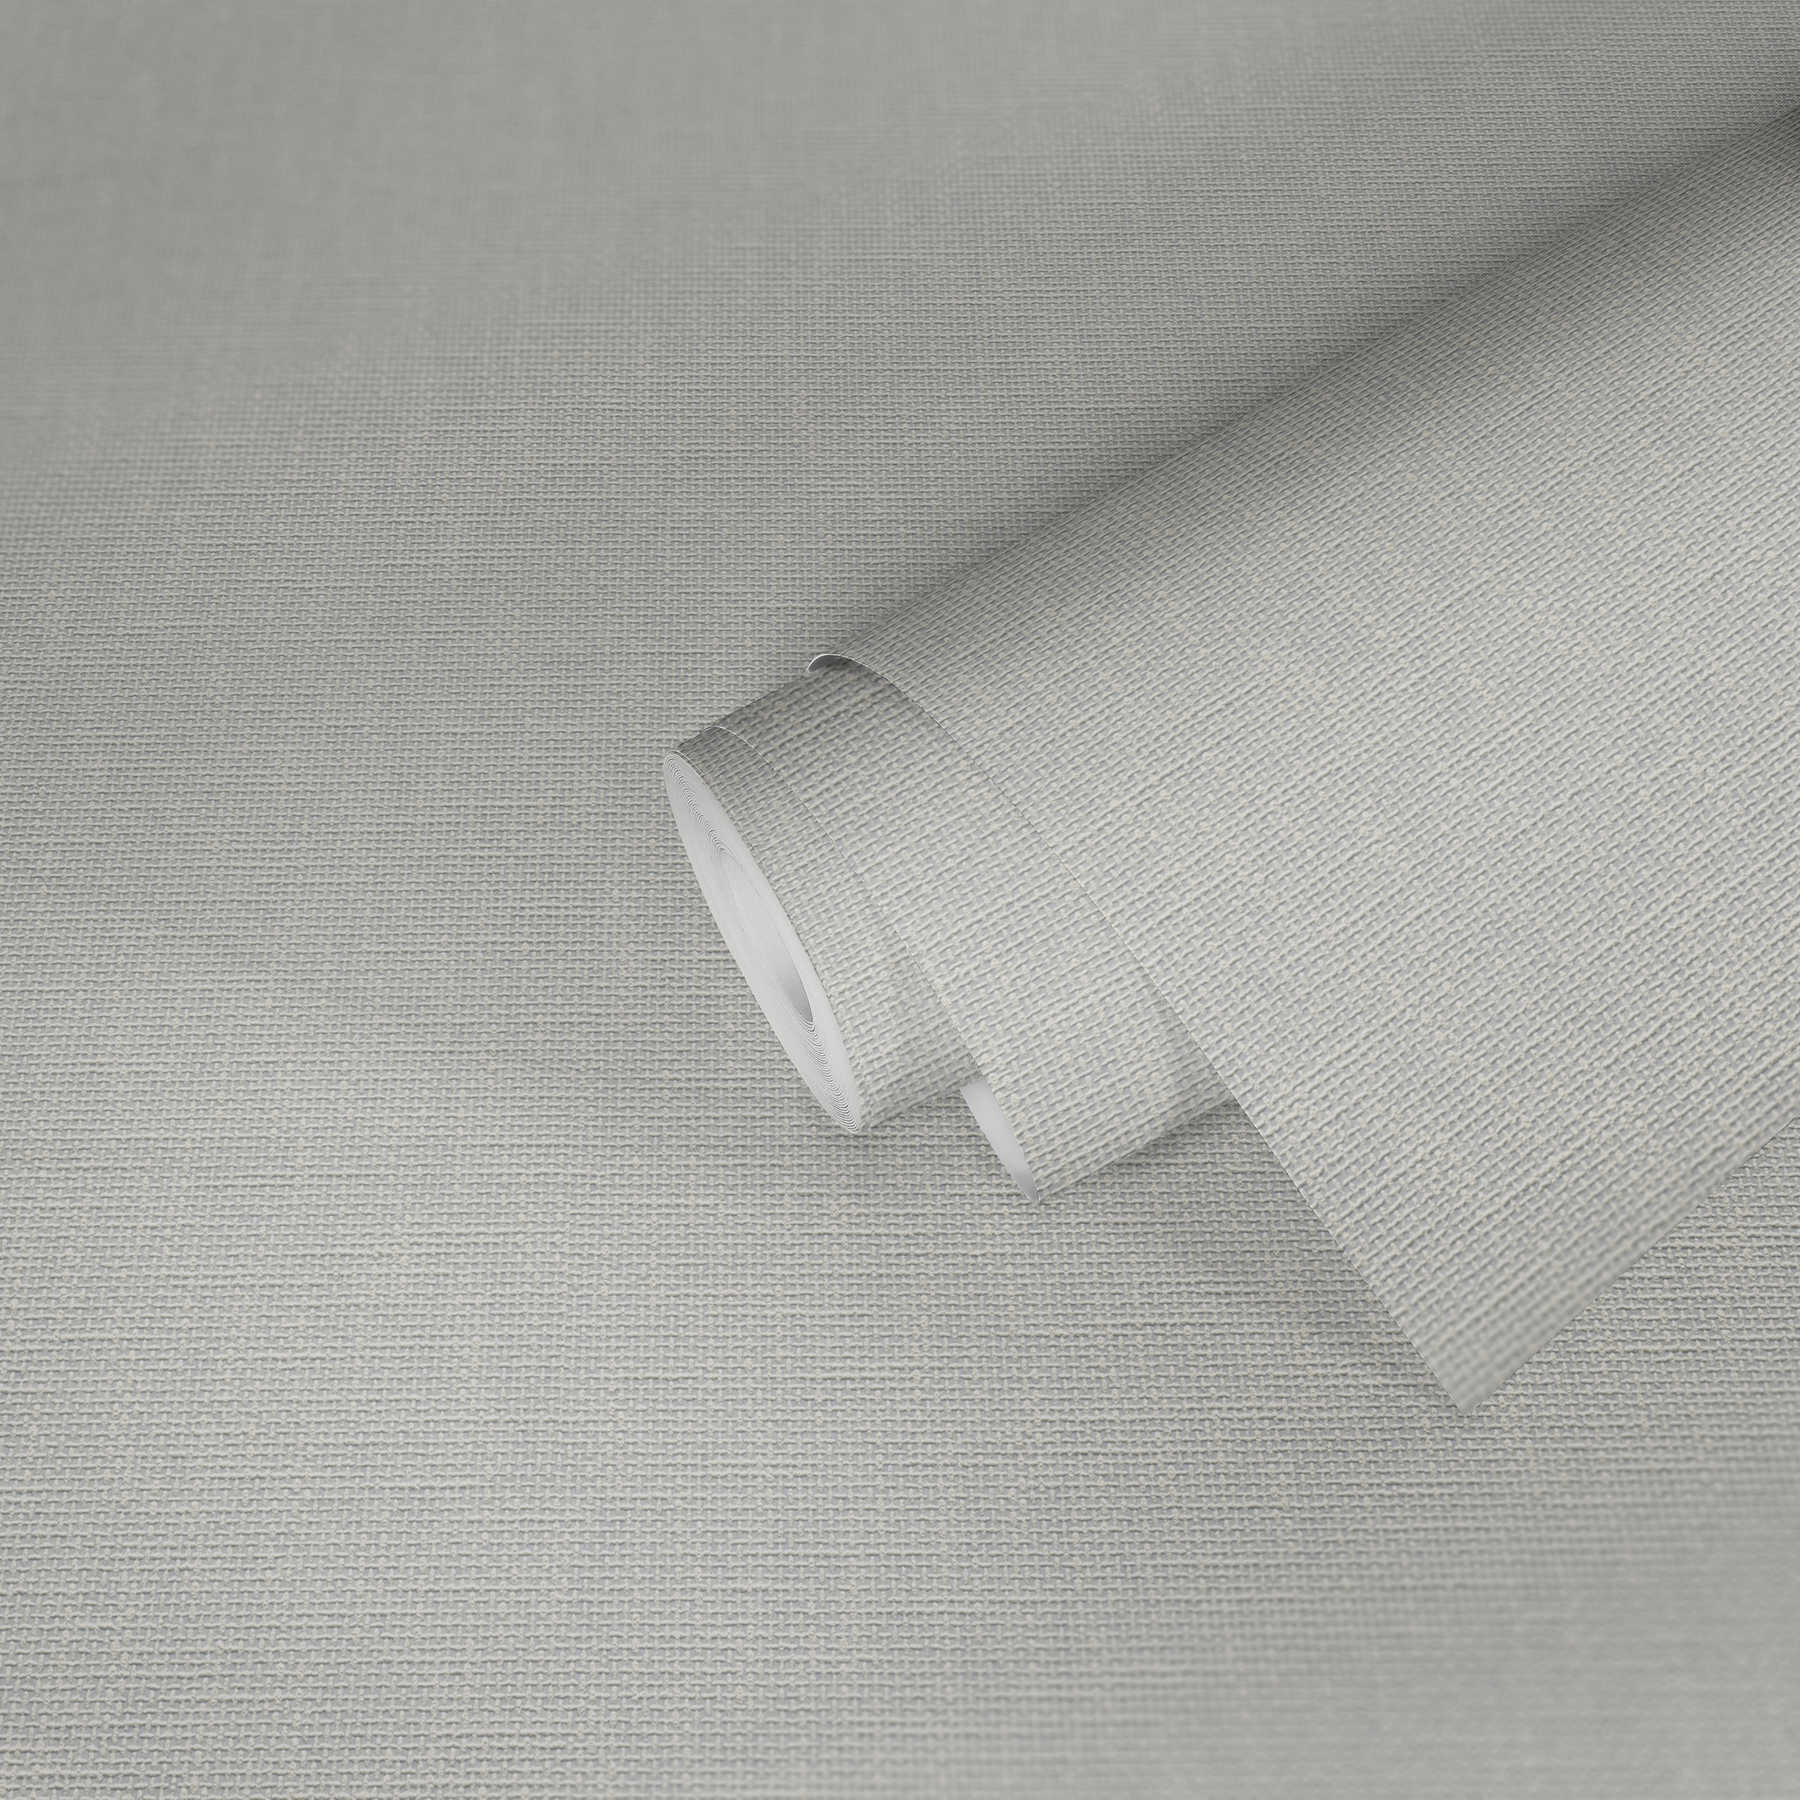             Tapete mit Gewebestruktur und Textil-Look – Weiß
        